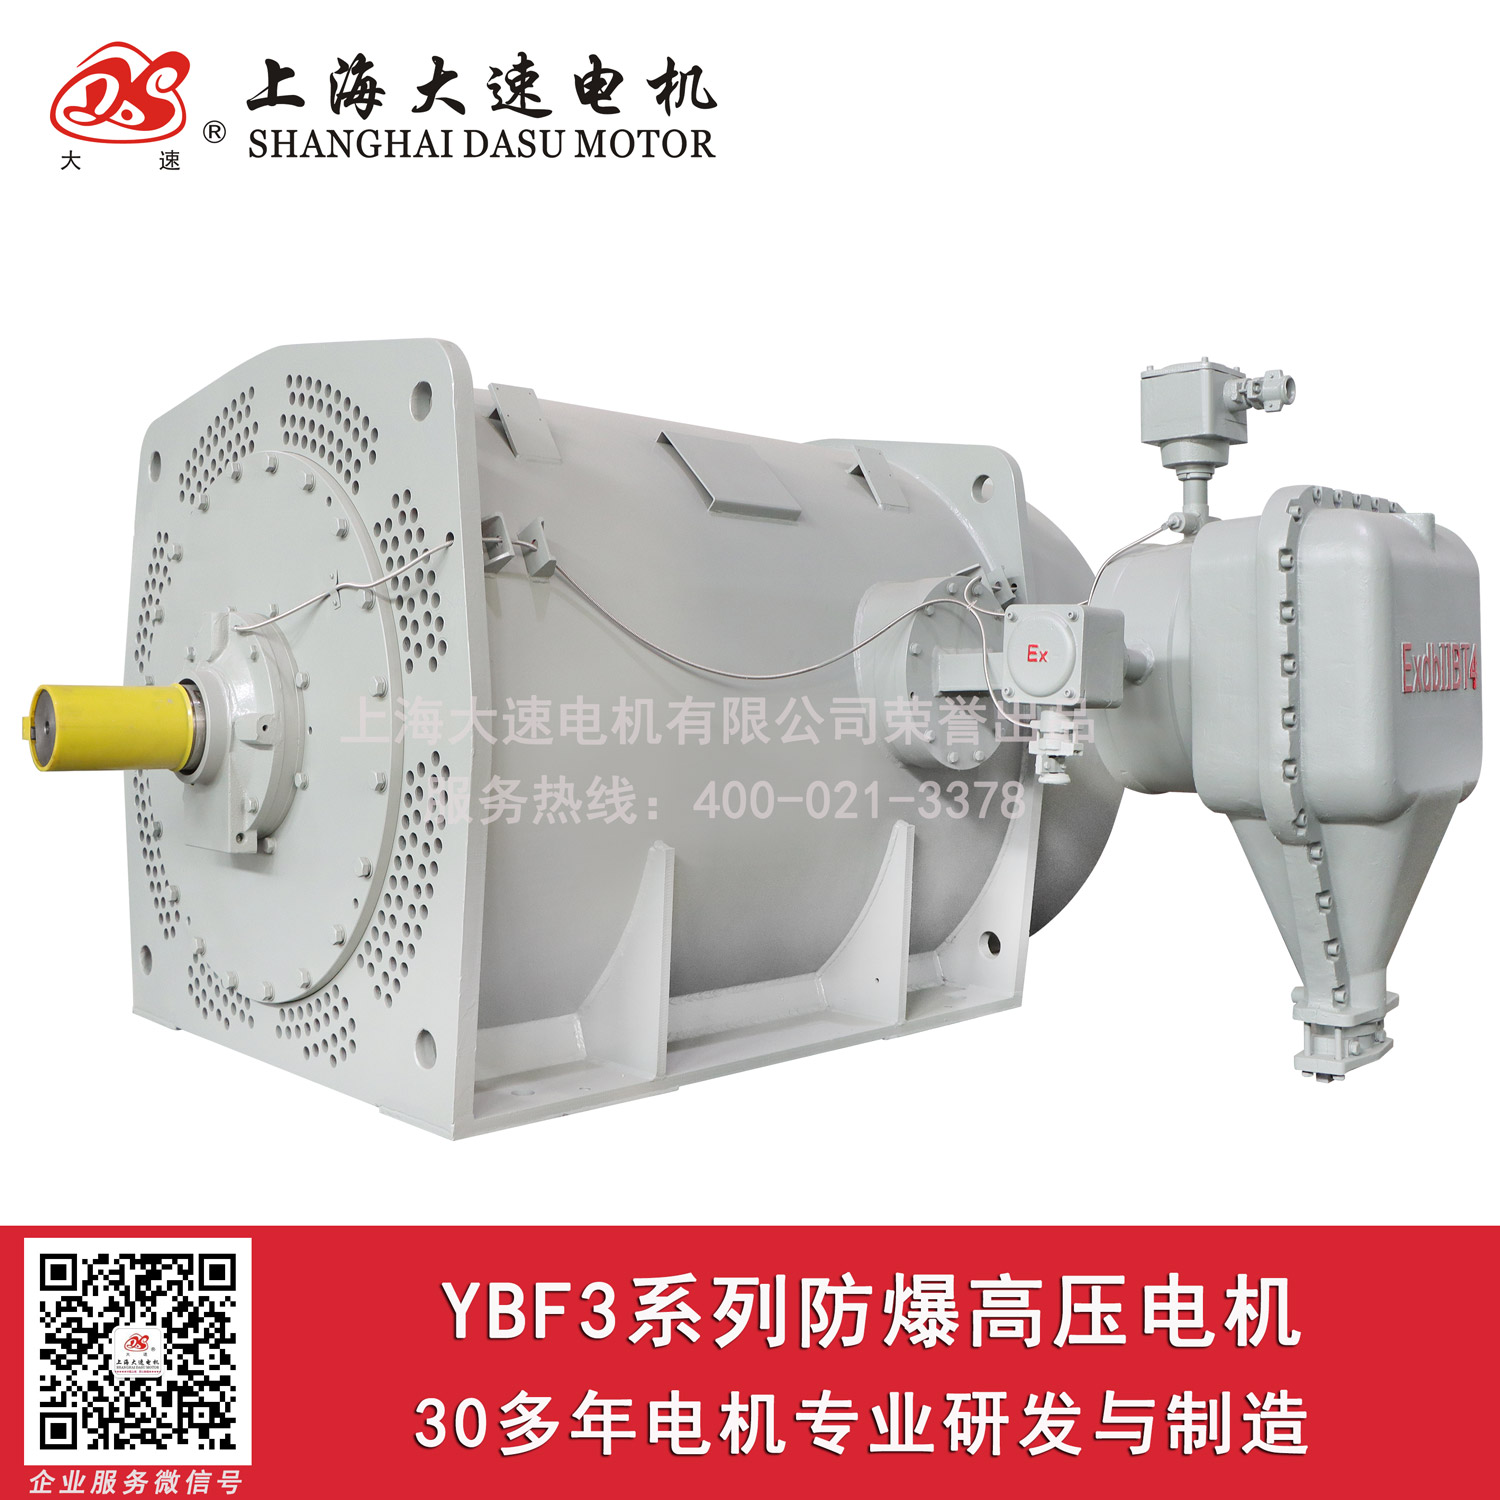 上海大速电机10KV6KVYBX3防爆高压电动机防爆变频电机高压电机工家直销1